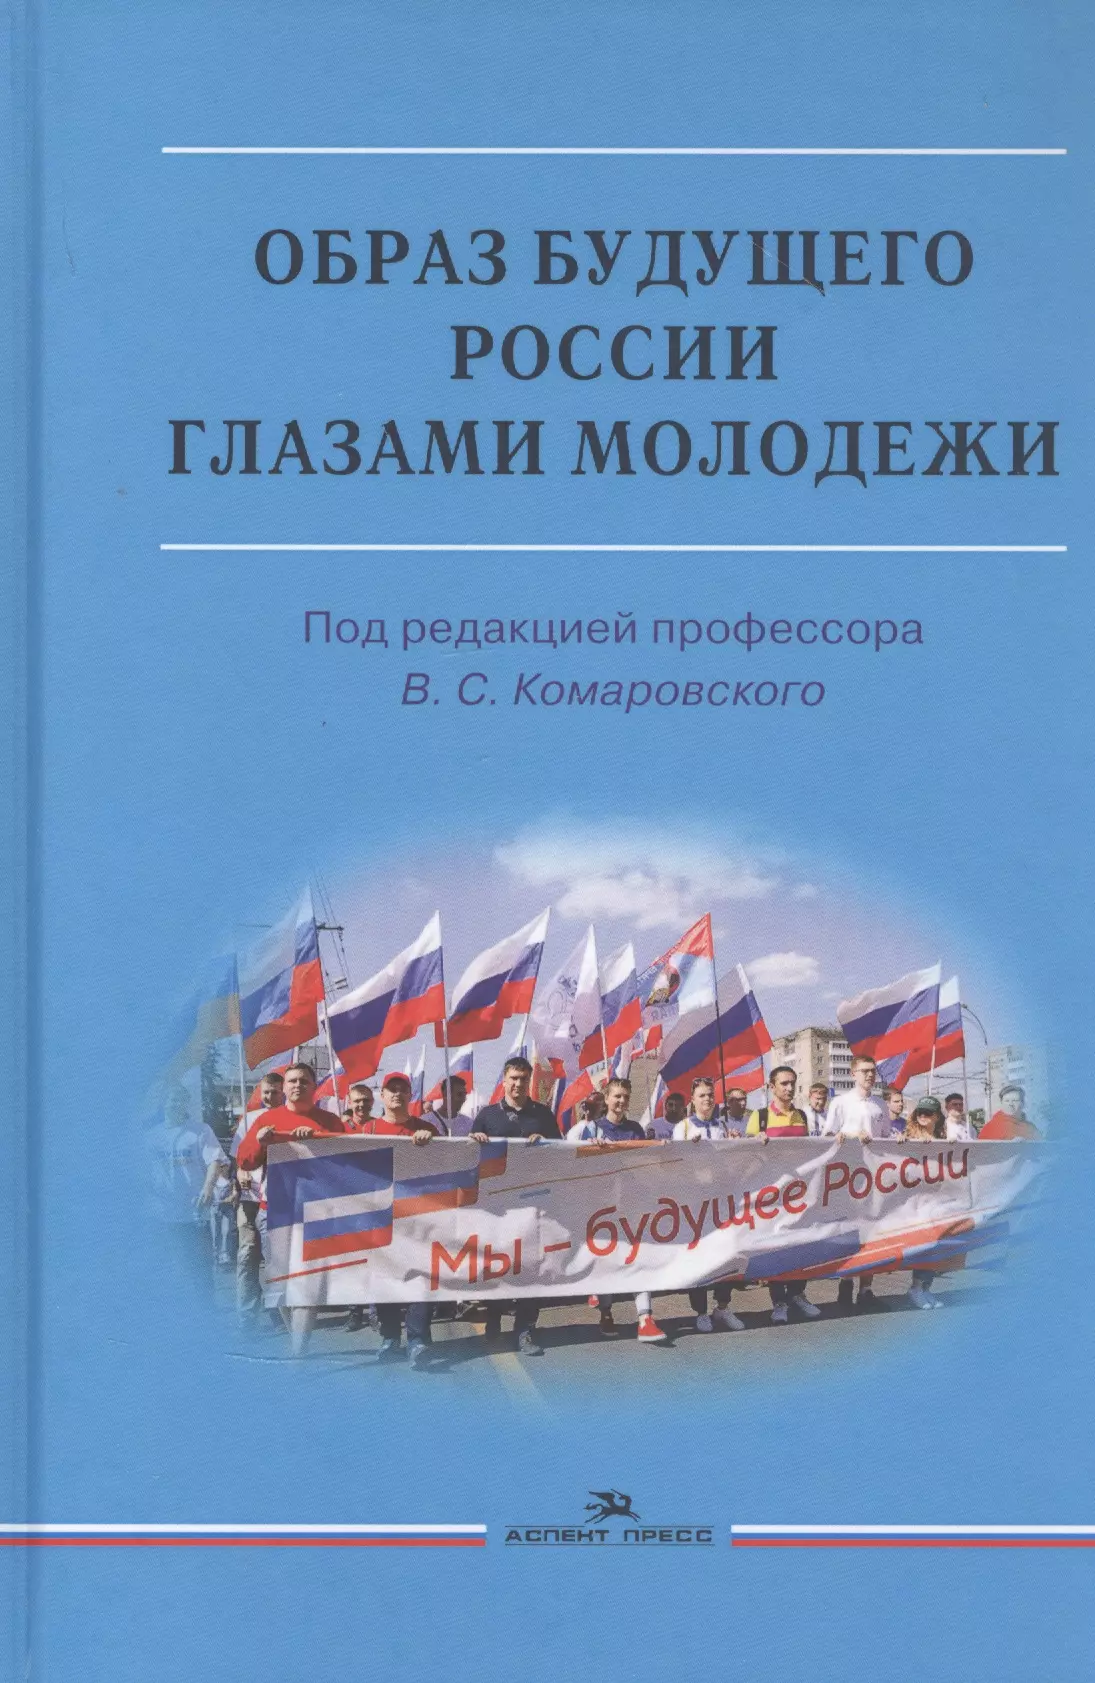 Книга будущее россии